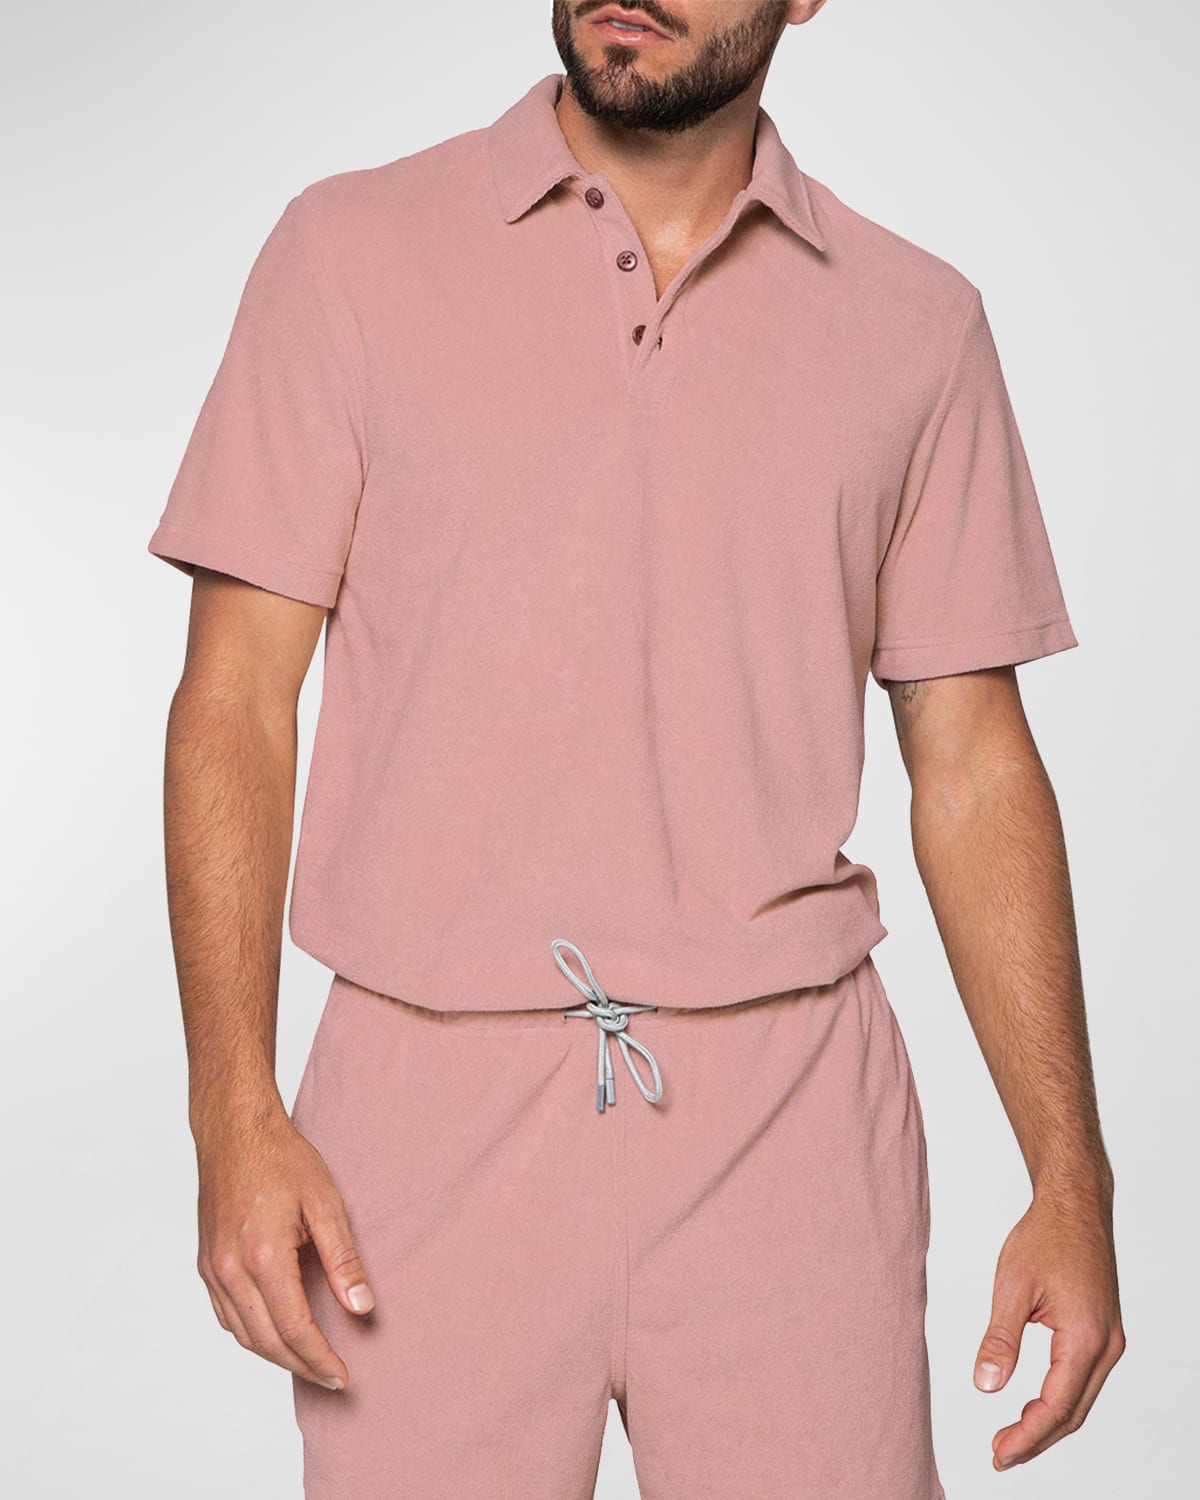 Men's Terrycloth Polo Shirt